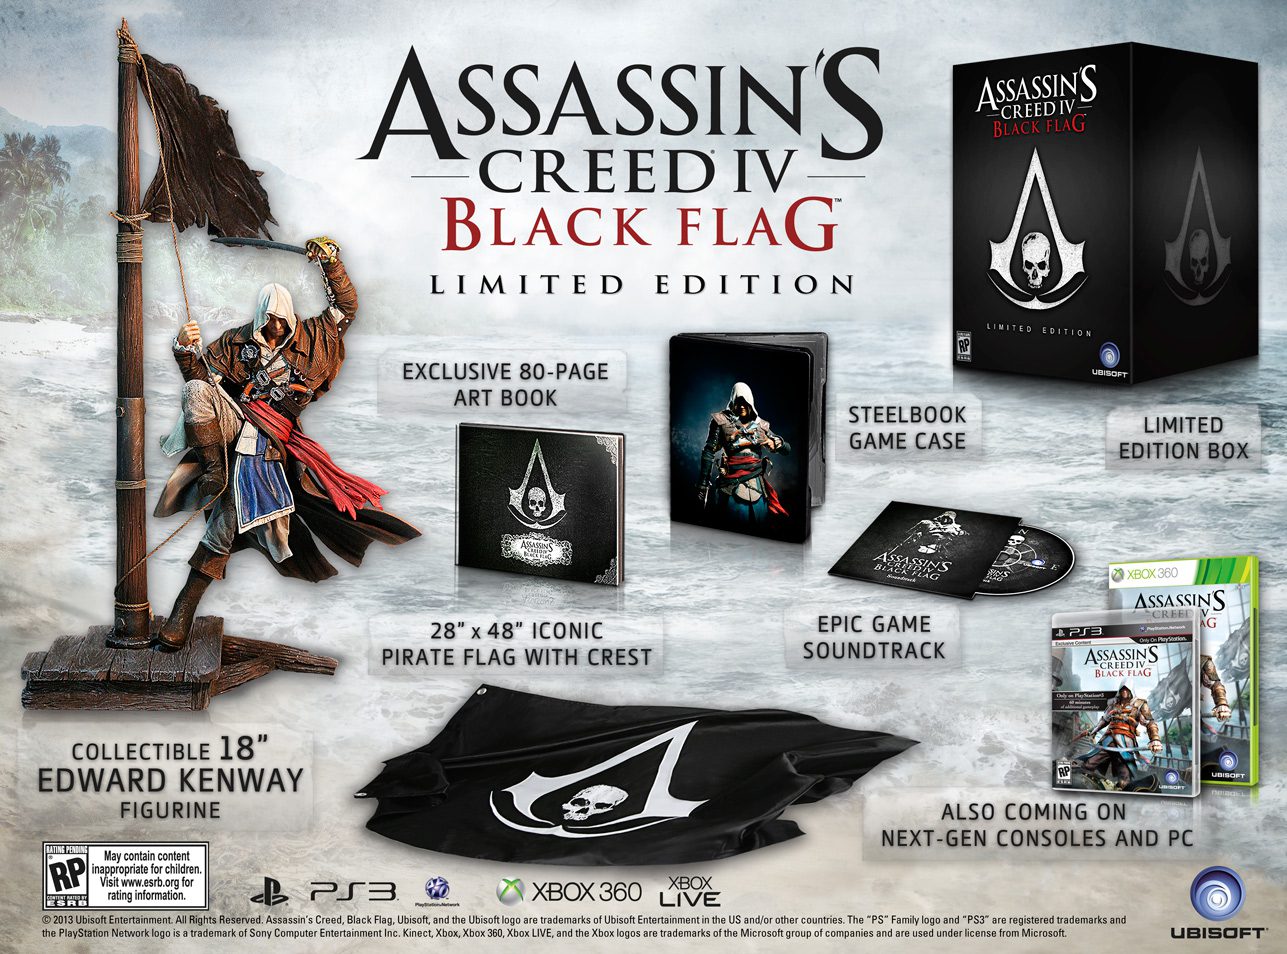 Se Muestra El Contenido De Assassin’s Creed IV: Black Flag Edición Limitada #AC4